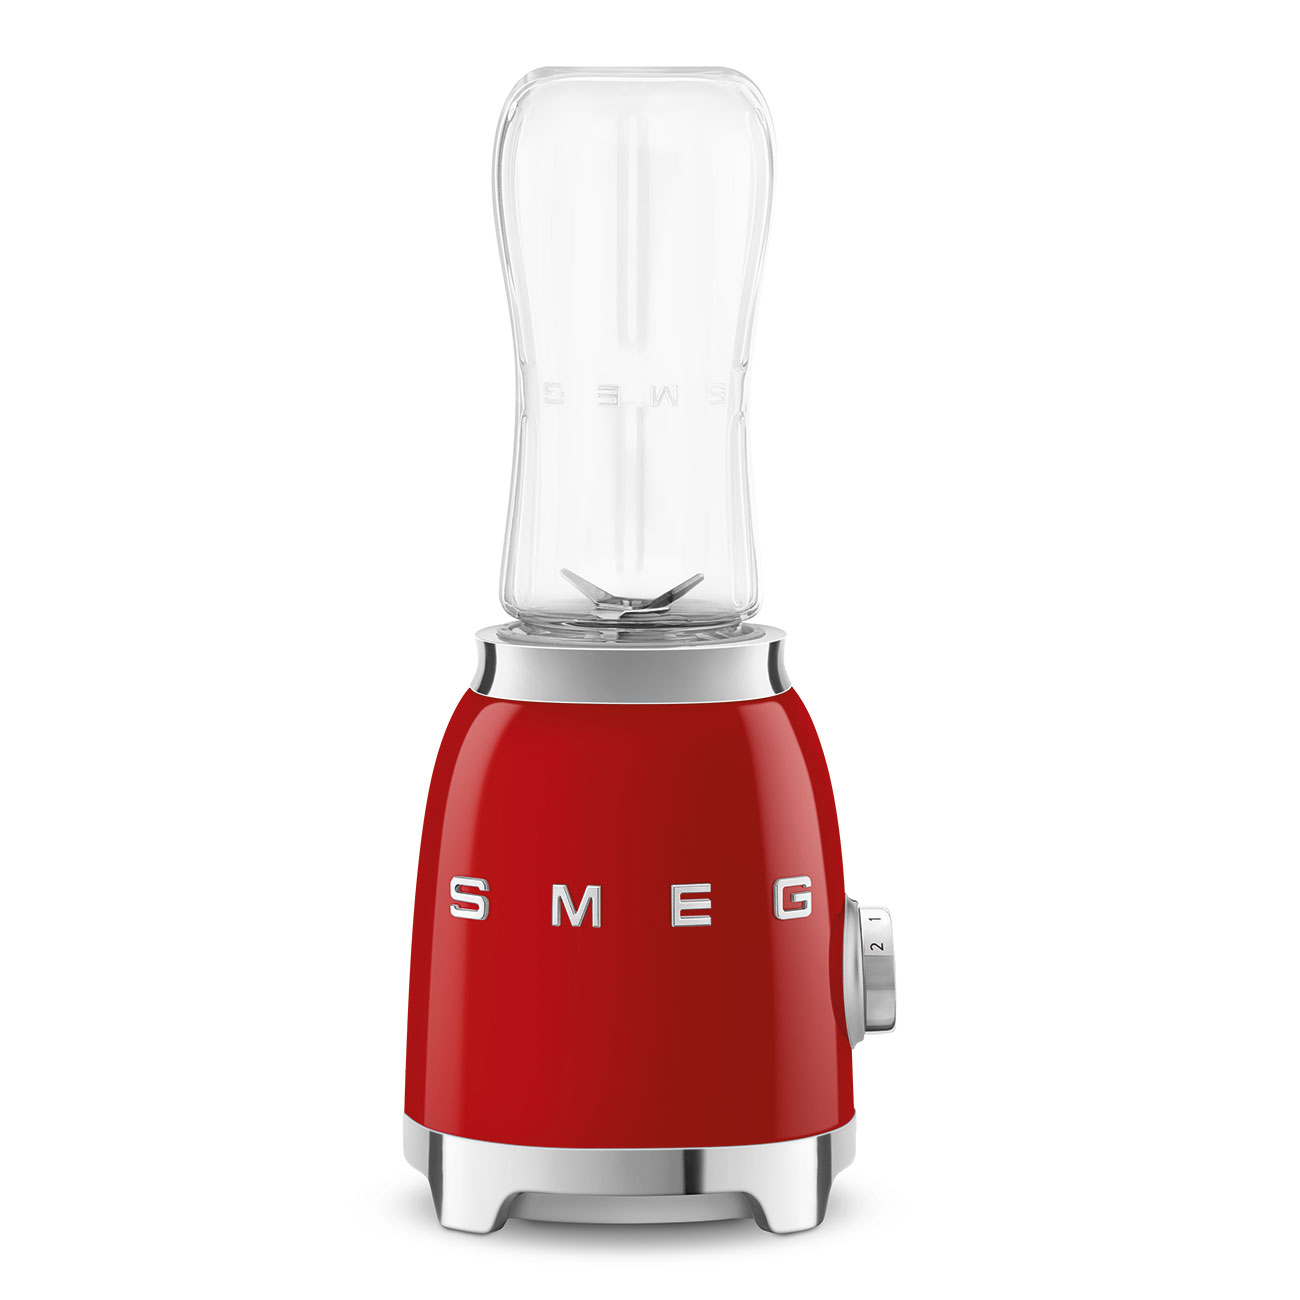 50's Style, Mini-Standmixer, Gehäuse aus Aluminium-Druckguss, Rot